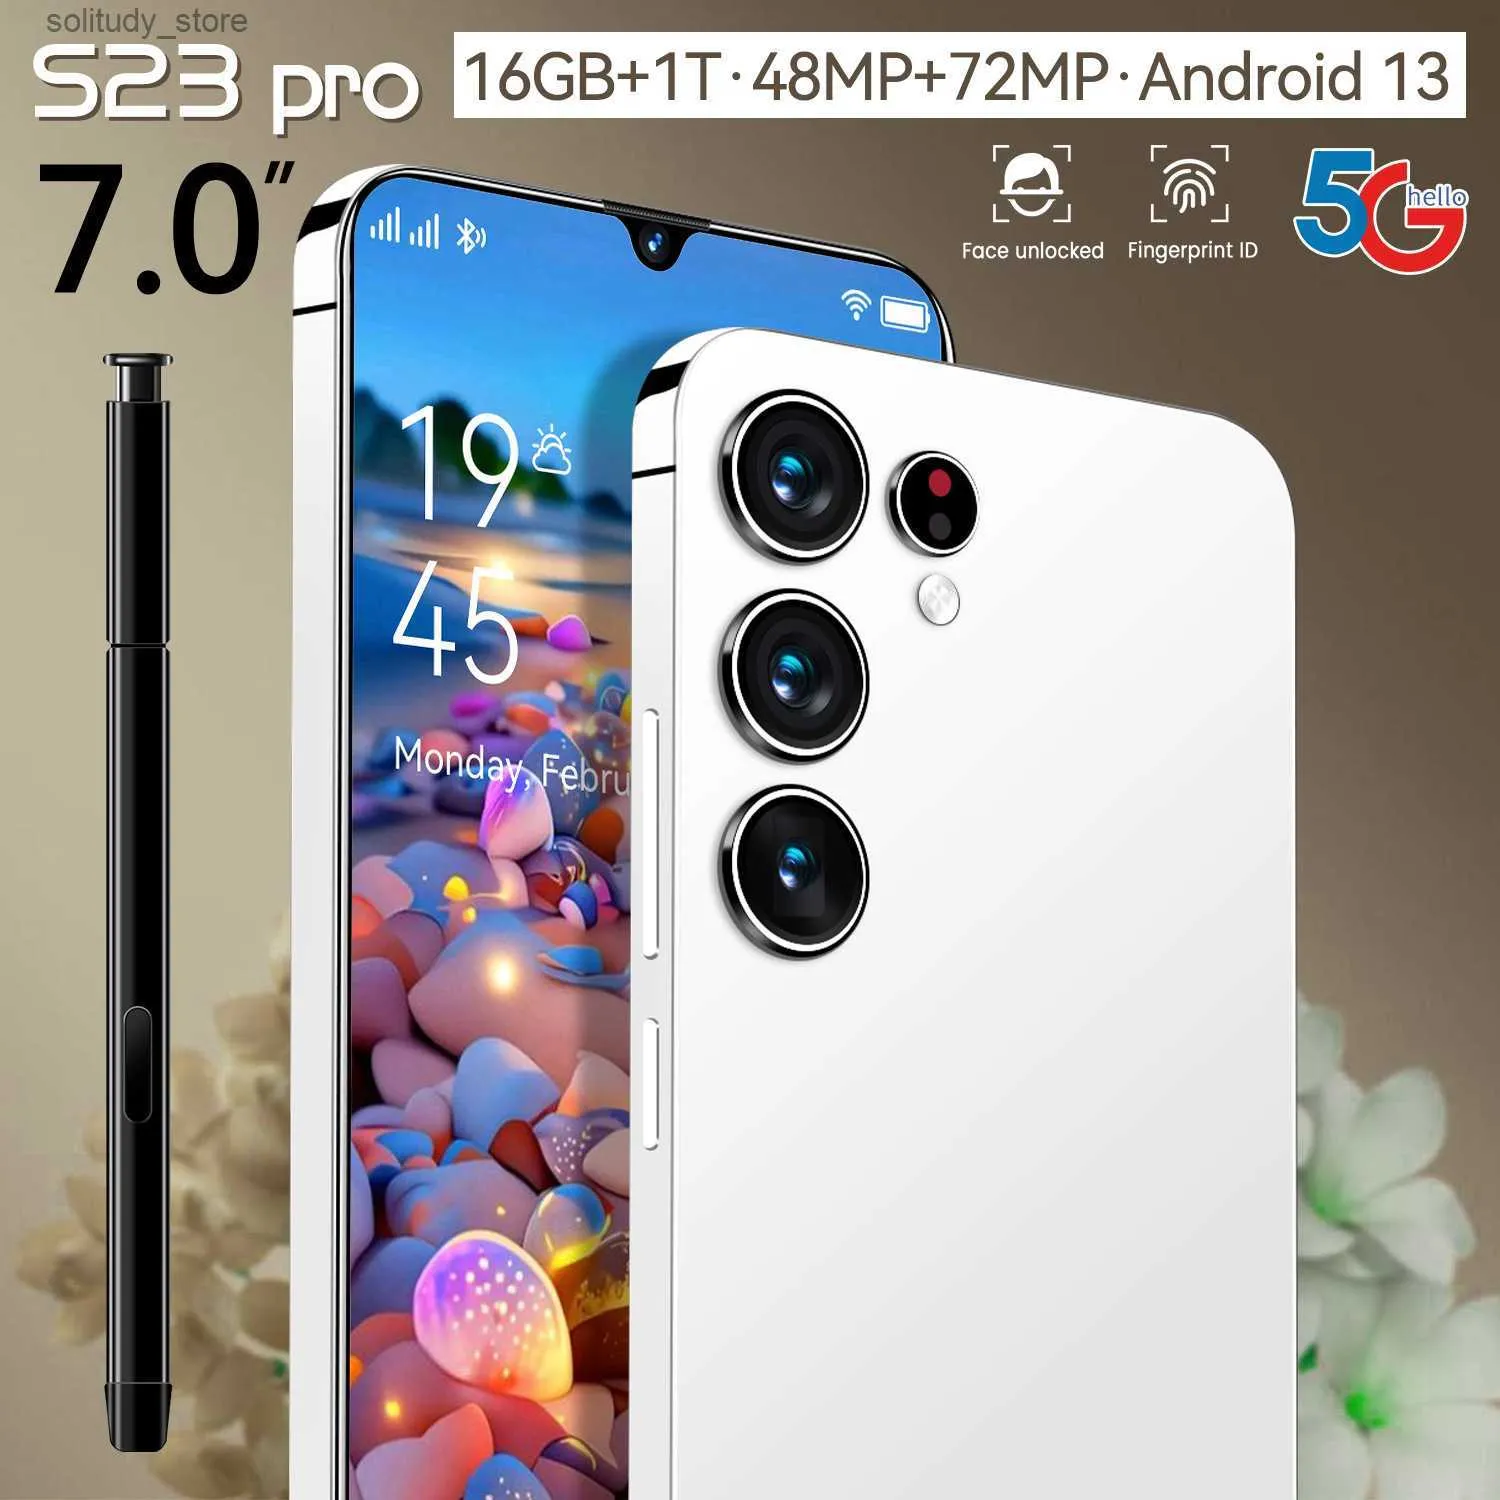 Мобильный телефон S23 Pro, популярный смартфон «все в одном» с большим экраном (1+8) и памятью Q240328